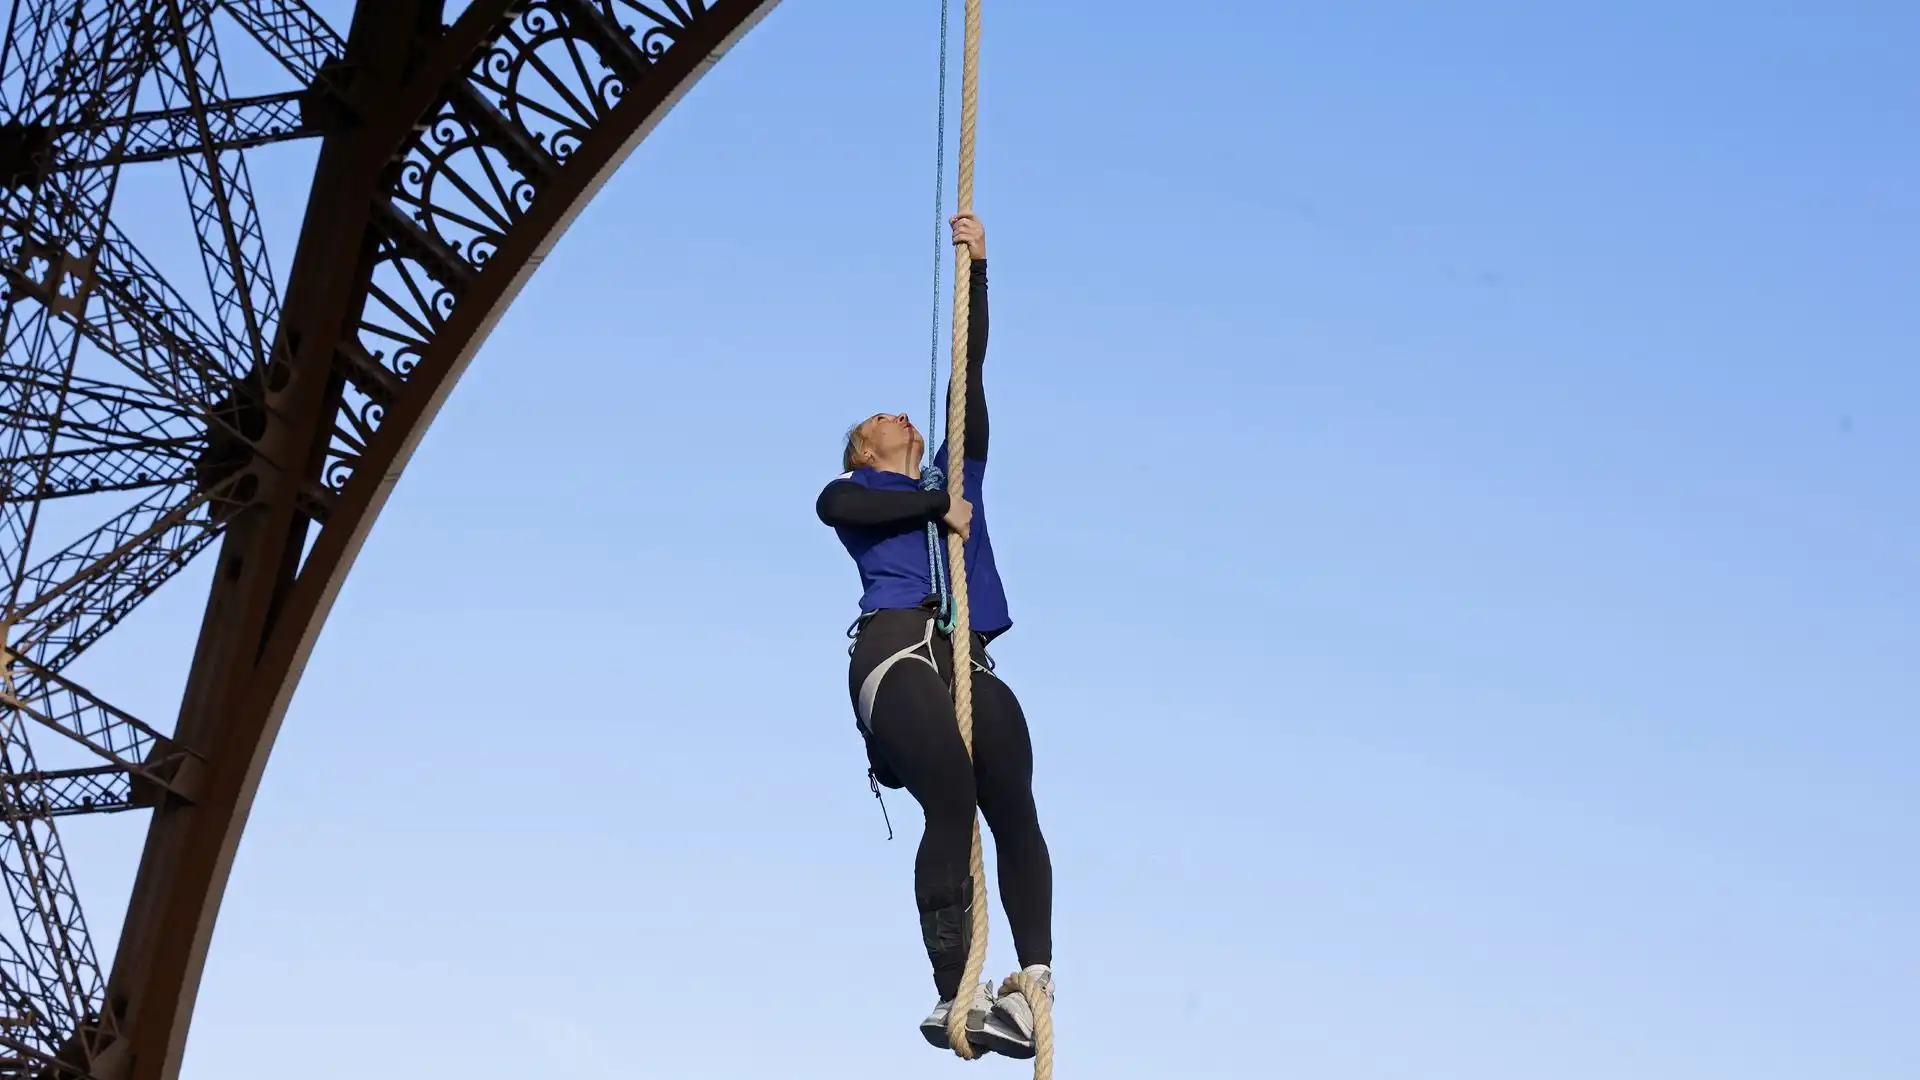 La donna ha battuto il record mondiale di arrampicata su corda